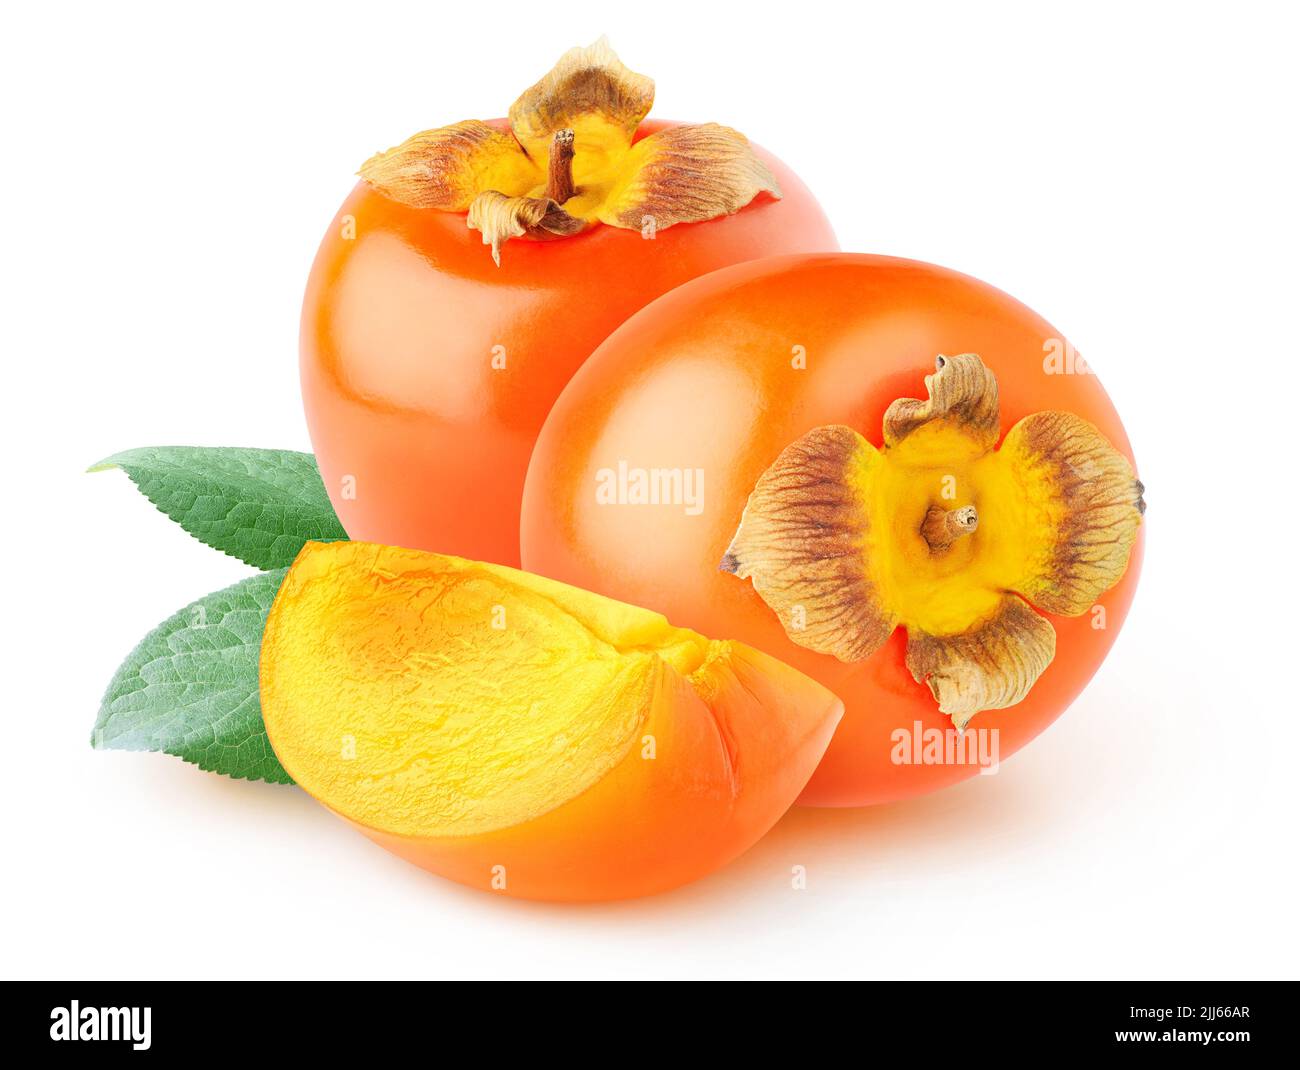 Couper les fruits kaki (persimmon) isolés sur fond blanc Banque D'Images